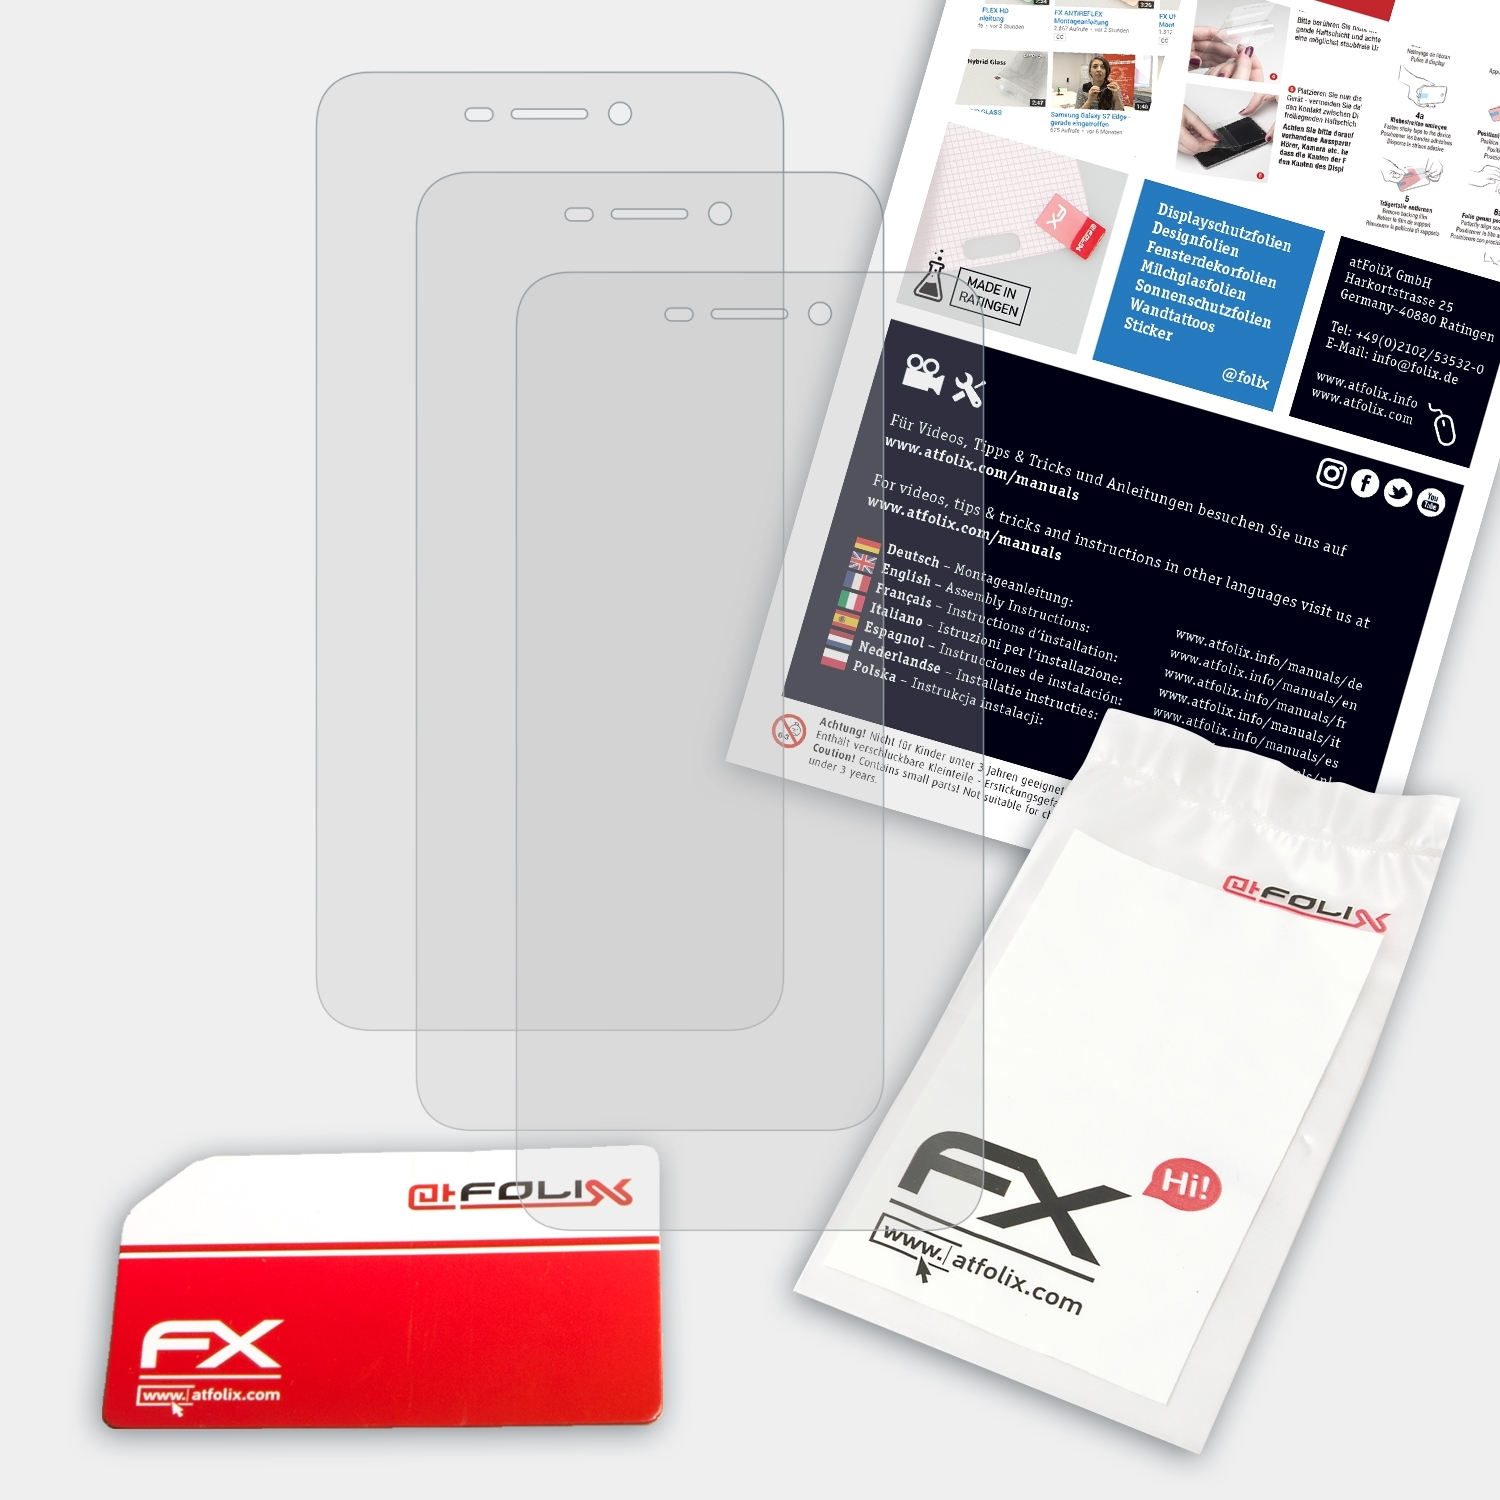 ATFOLIX 3x FX-Antireflex Displayschutz(für Neon) 50f Archos